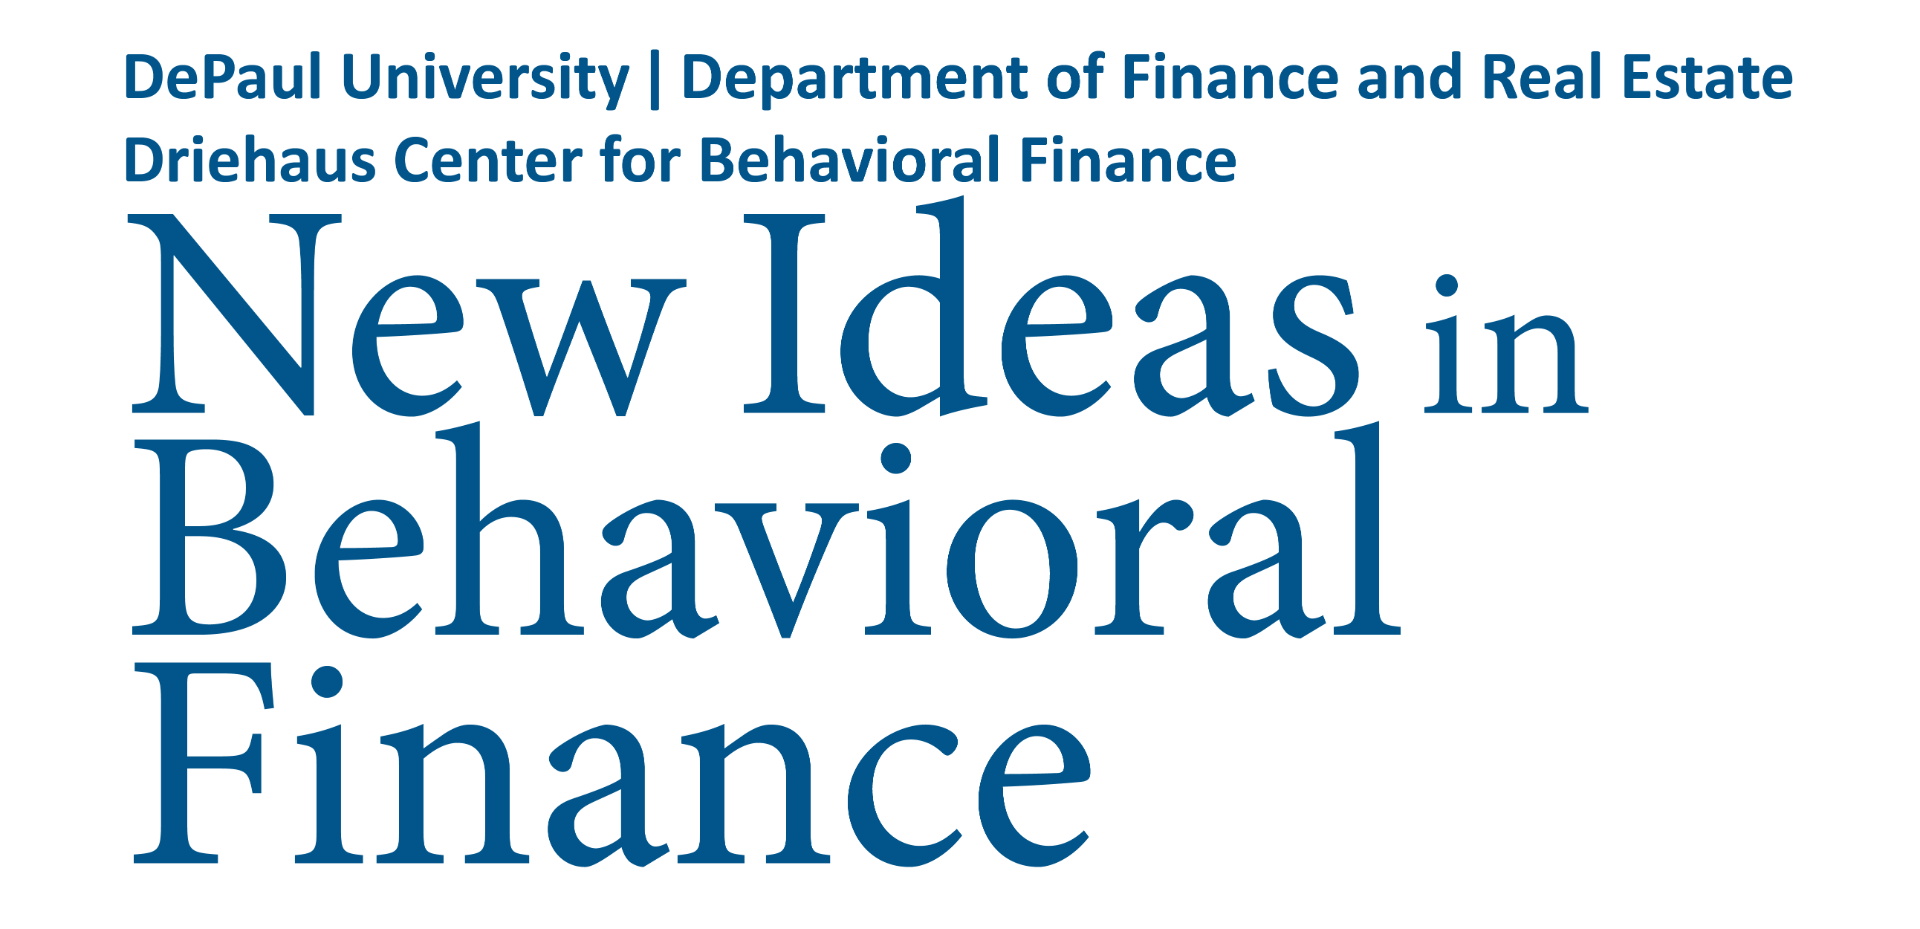 Driehaus Center for Behavioral Finance